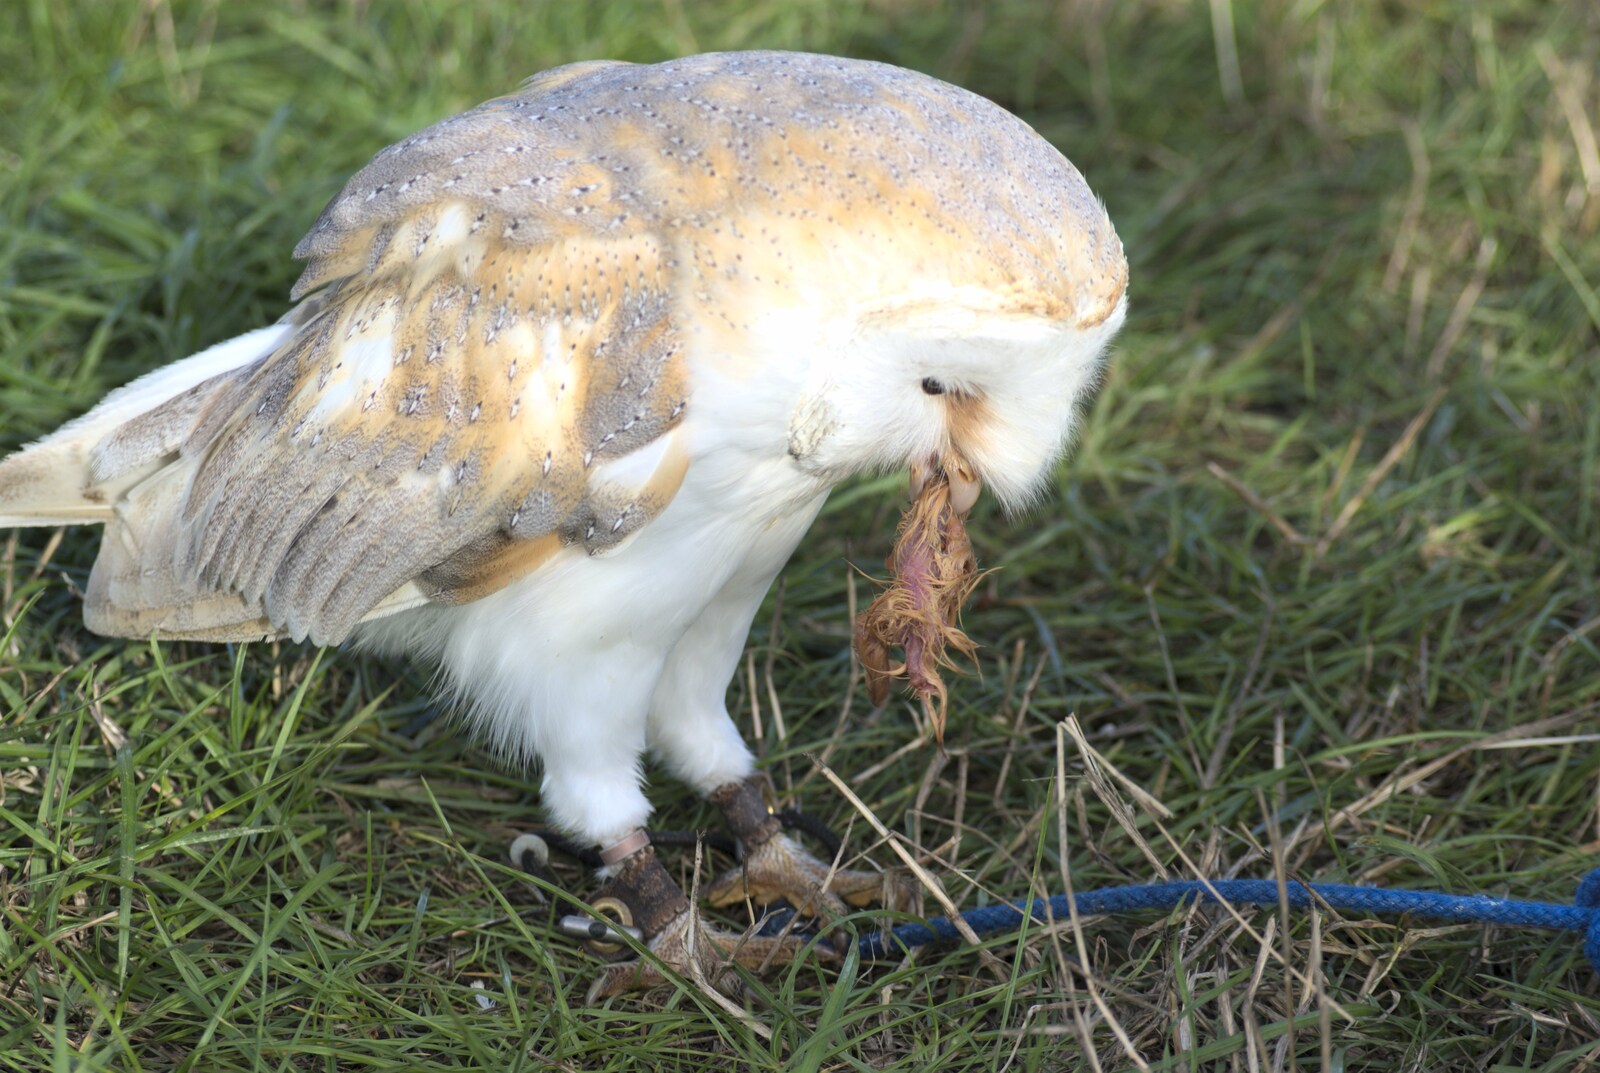 The Eye Show, Palgrave, Suffolk - 30th August 2010: An owl eats a bird head